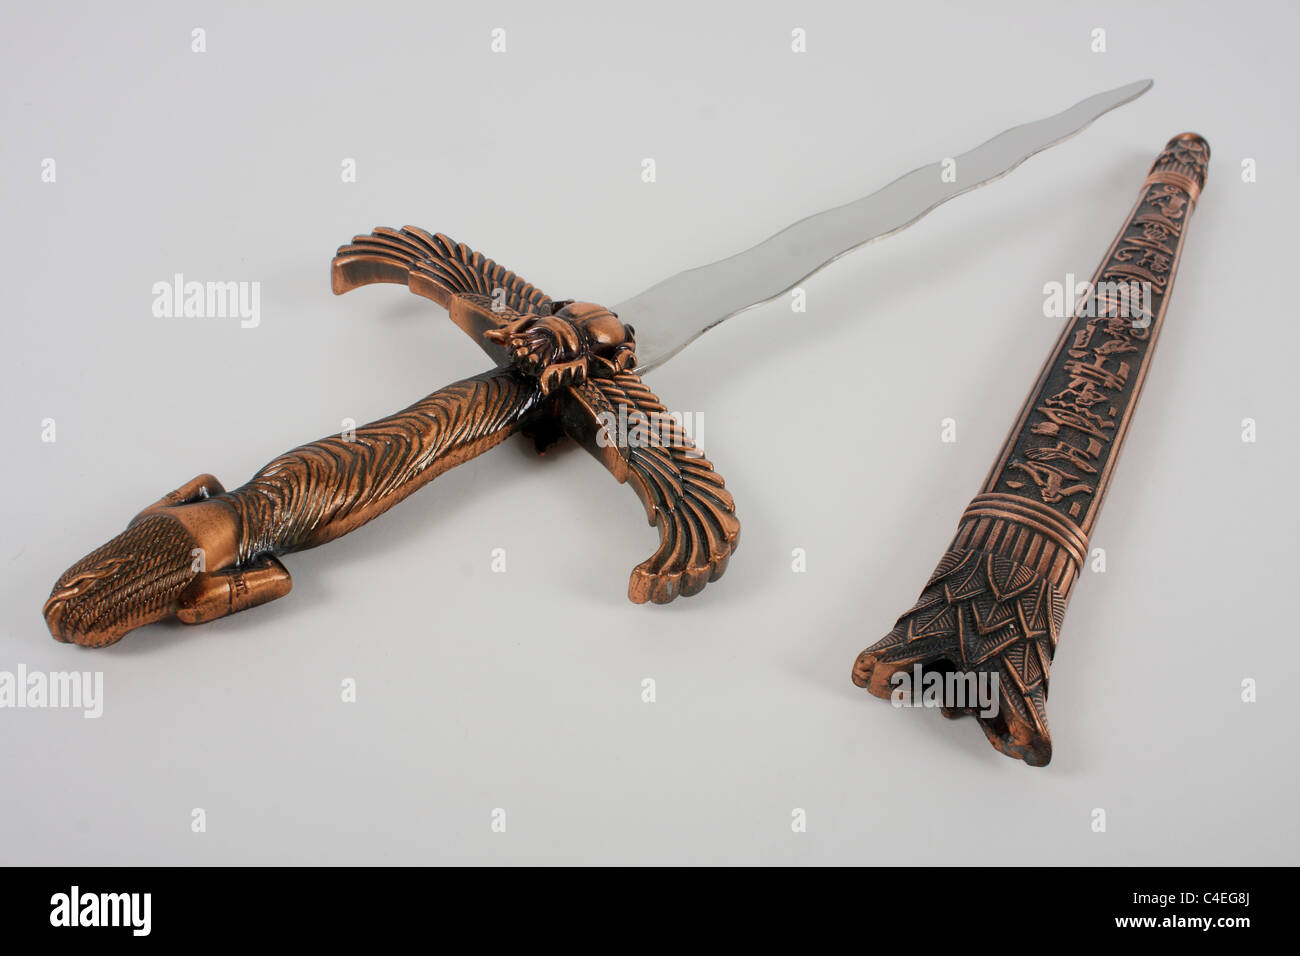 Eine zeremonielle Athame für rituellen Gebrauch und als tödliche Waffe. Ein Messer hat eine scharfe Klinge, die in der Regel aus Edelstahl. Stockfoto